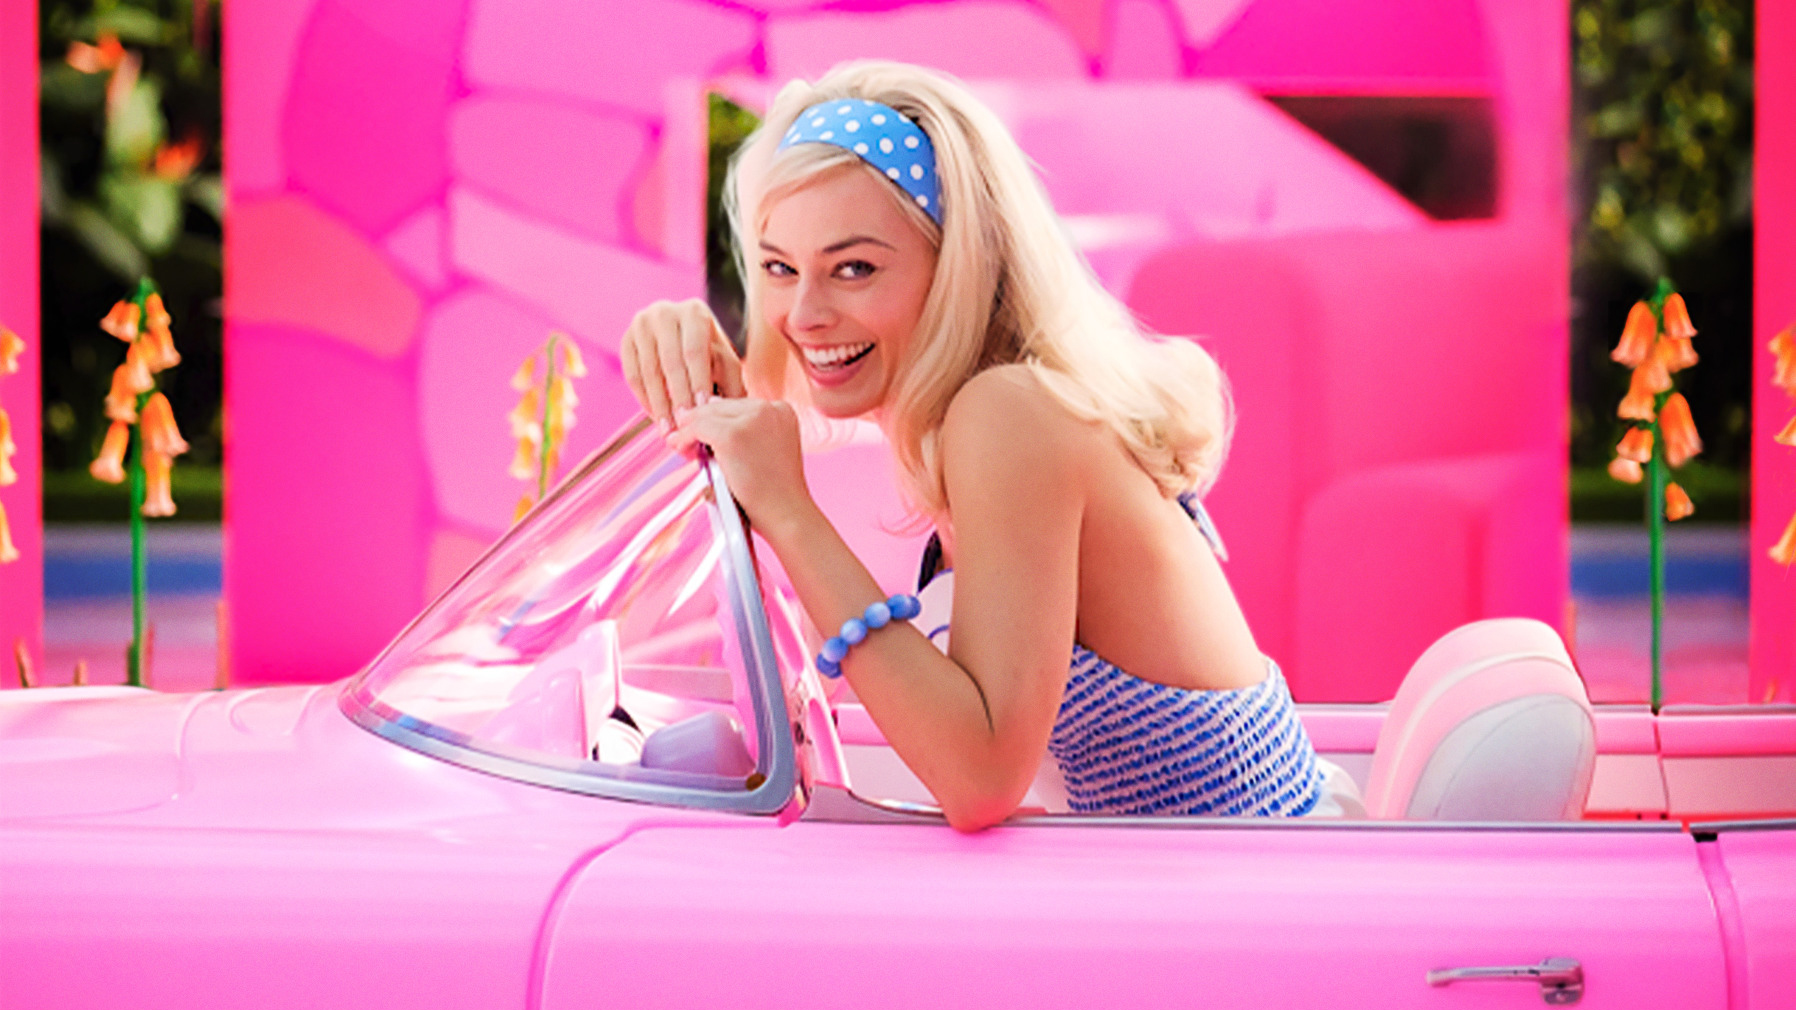 Margot Robbie as Barbie in the Barbie movie